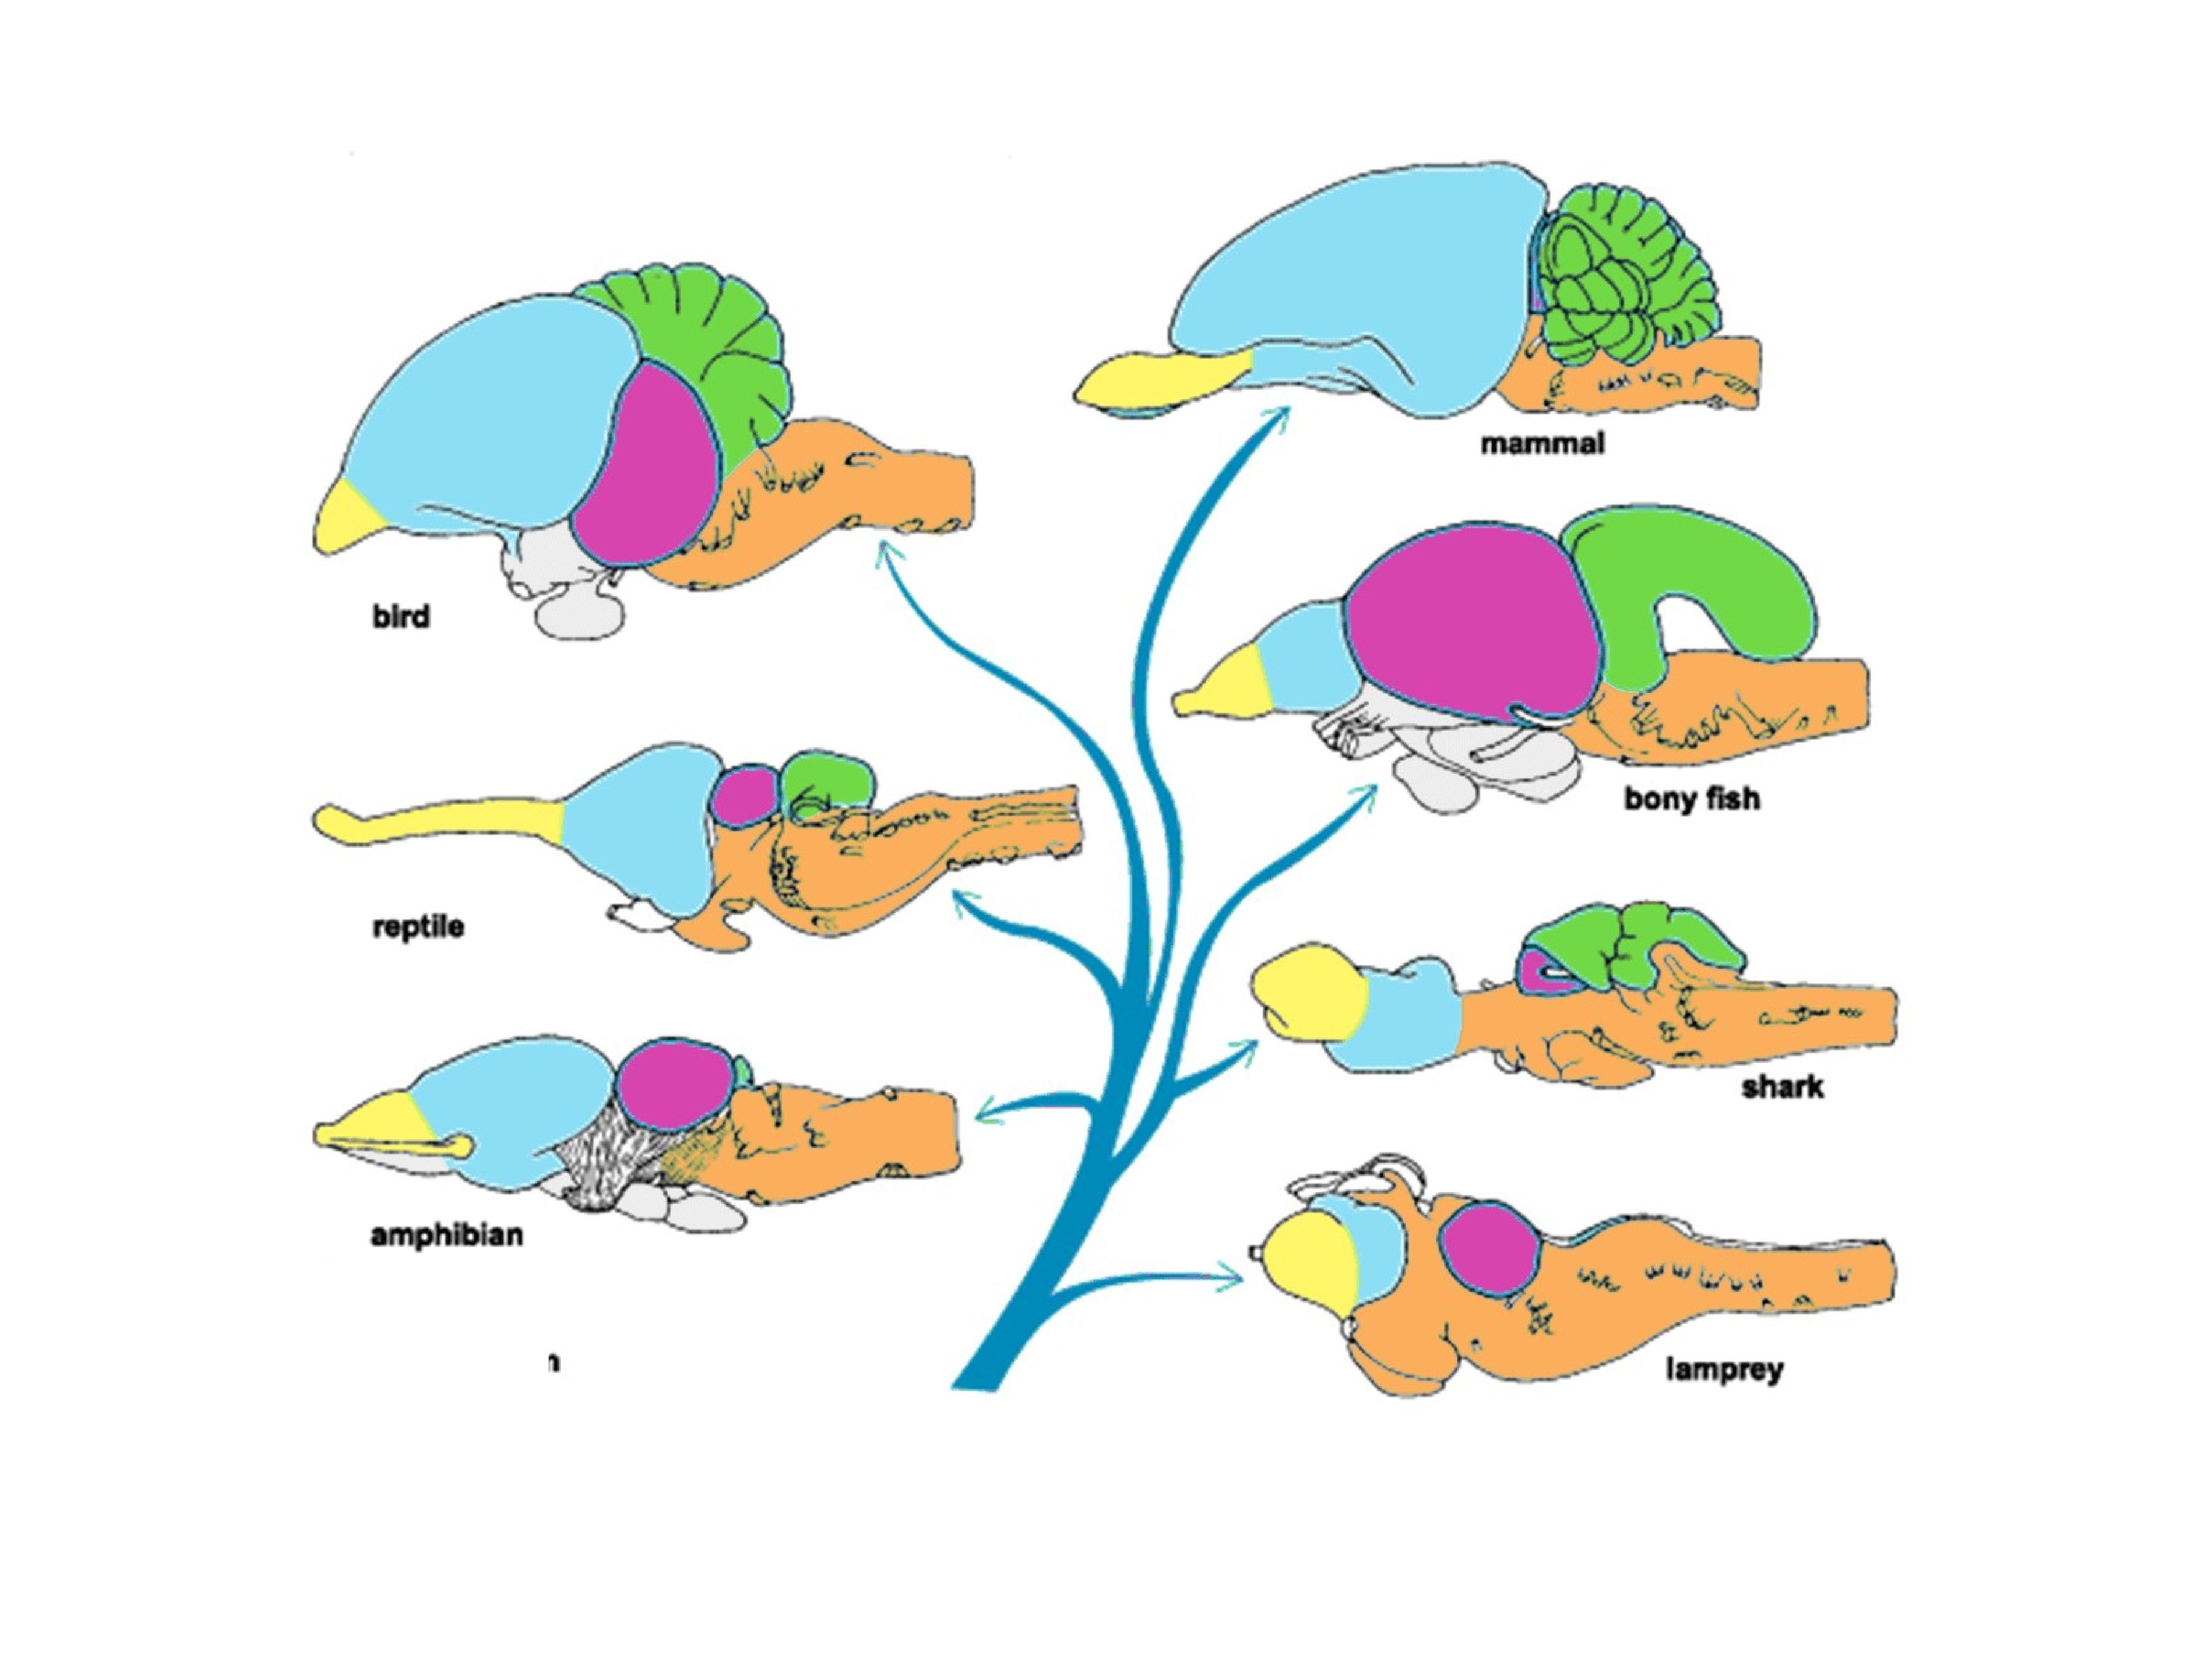 Эволюция мозга у позвоночных животных